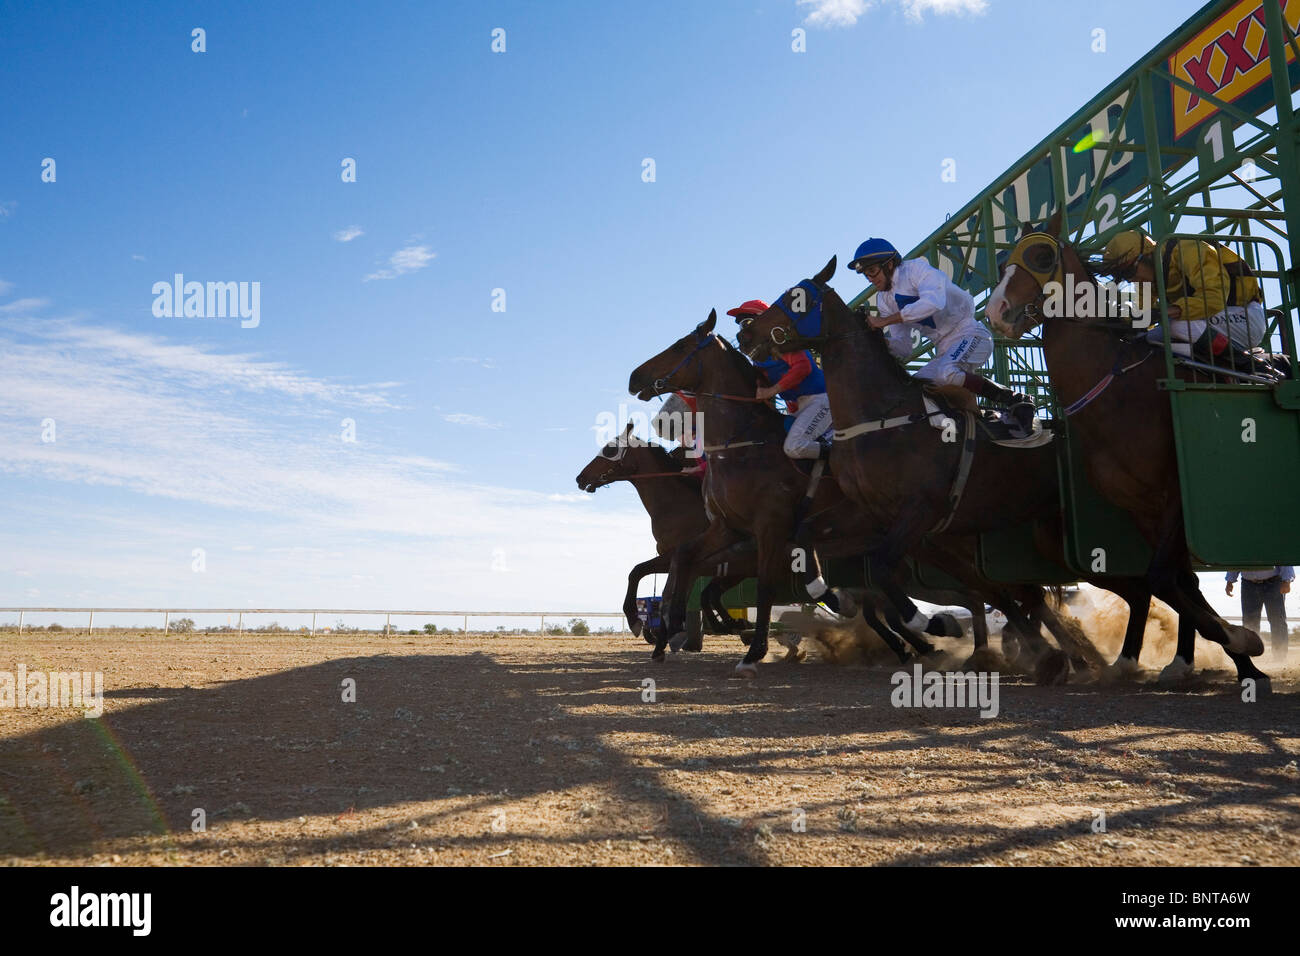 Die Pferde springen aus den starten Barrieren während der Birdsville Cuprennen. Birdsville, Queensland, Australien. Stockfoto